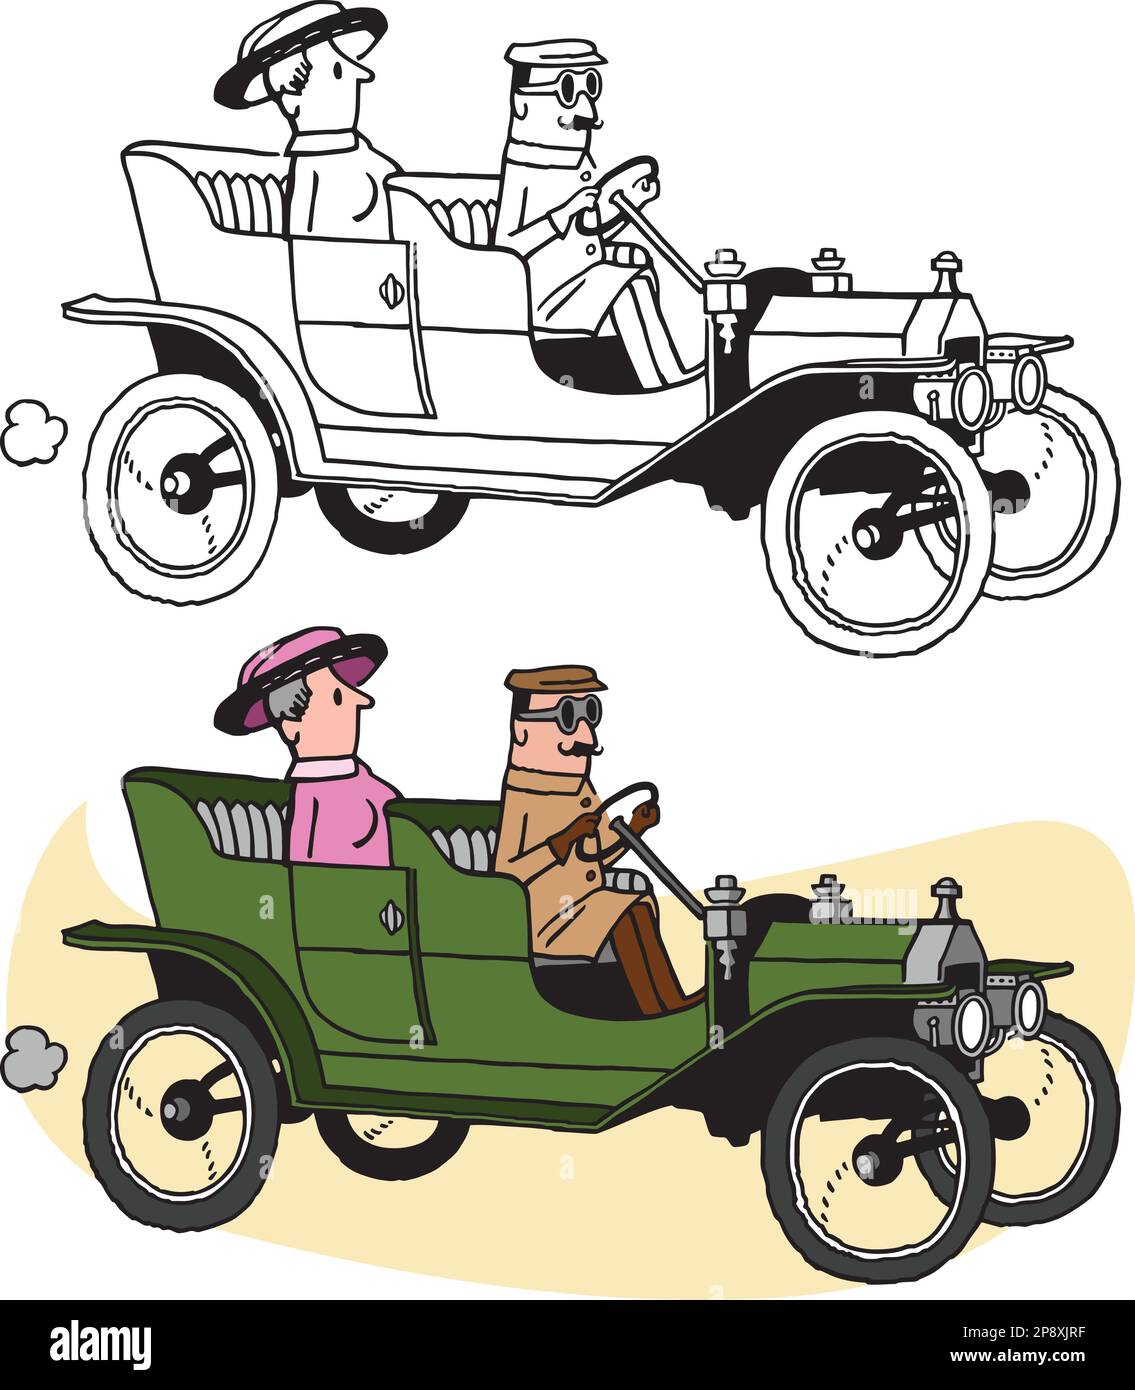 Un dessin animé rétro vintage d'un homme conduisant une femme dans une voiture de roadster antique. Illustration de Vecteur